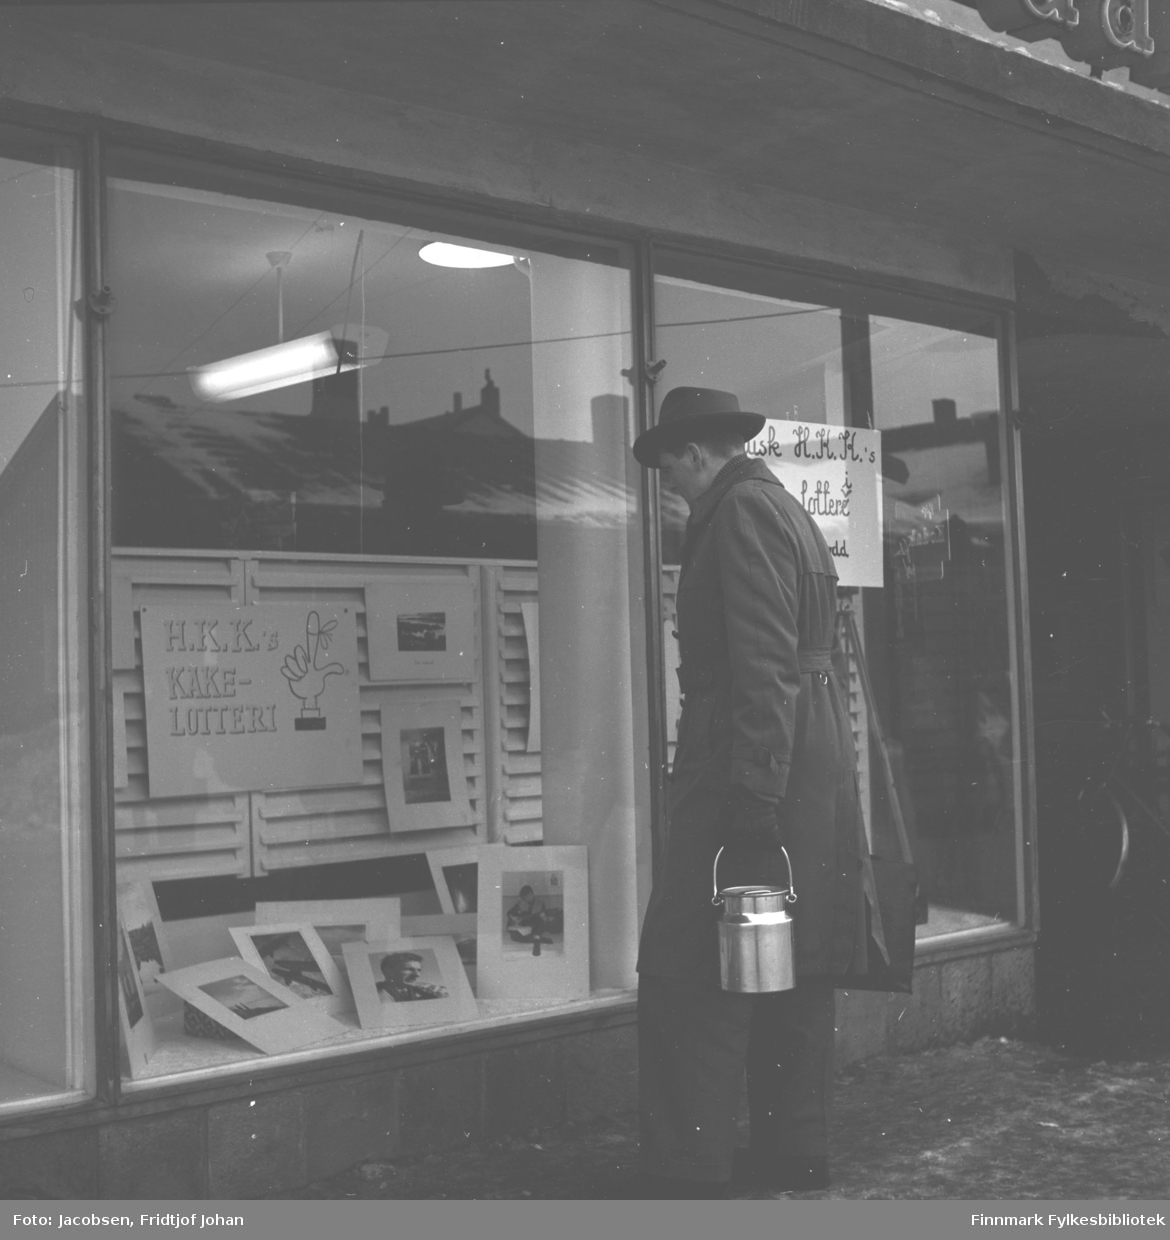 Tor Todal kikker i et utstillingsvindu til en butikk i Hammerfest. Han har mørke klær på seg, frakk/bukse og hatt. Han har en blankt spann i sin venstre hånd. Nederst i vinduet ligger flere fotografier og på veggen henger en reklameplakat for H.K.Ks kakelotteri.